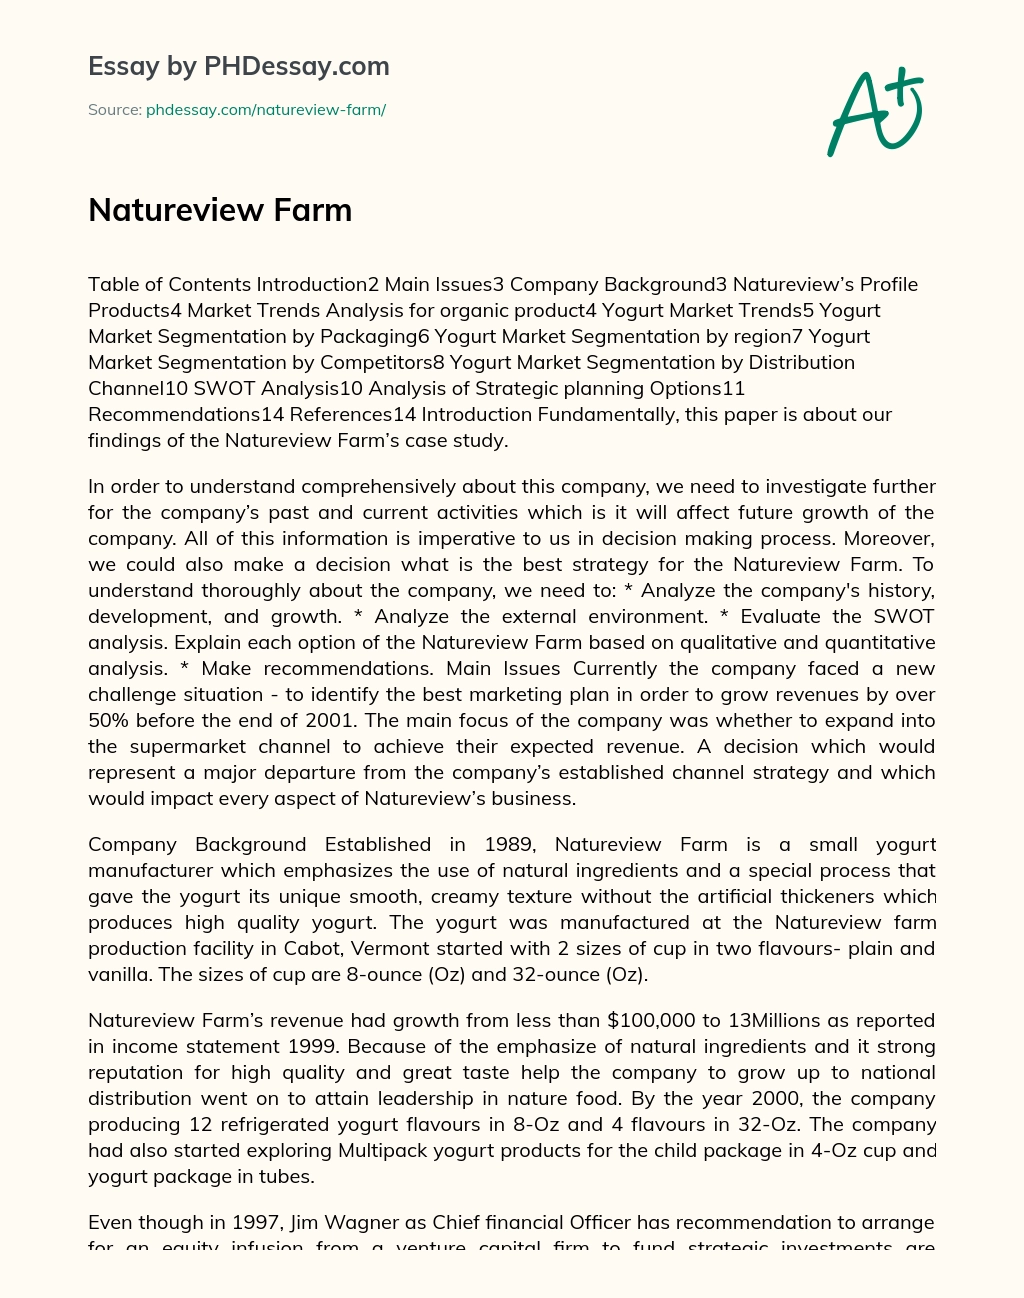 Natureview Farm essay